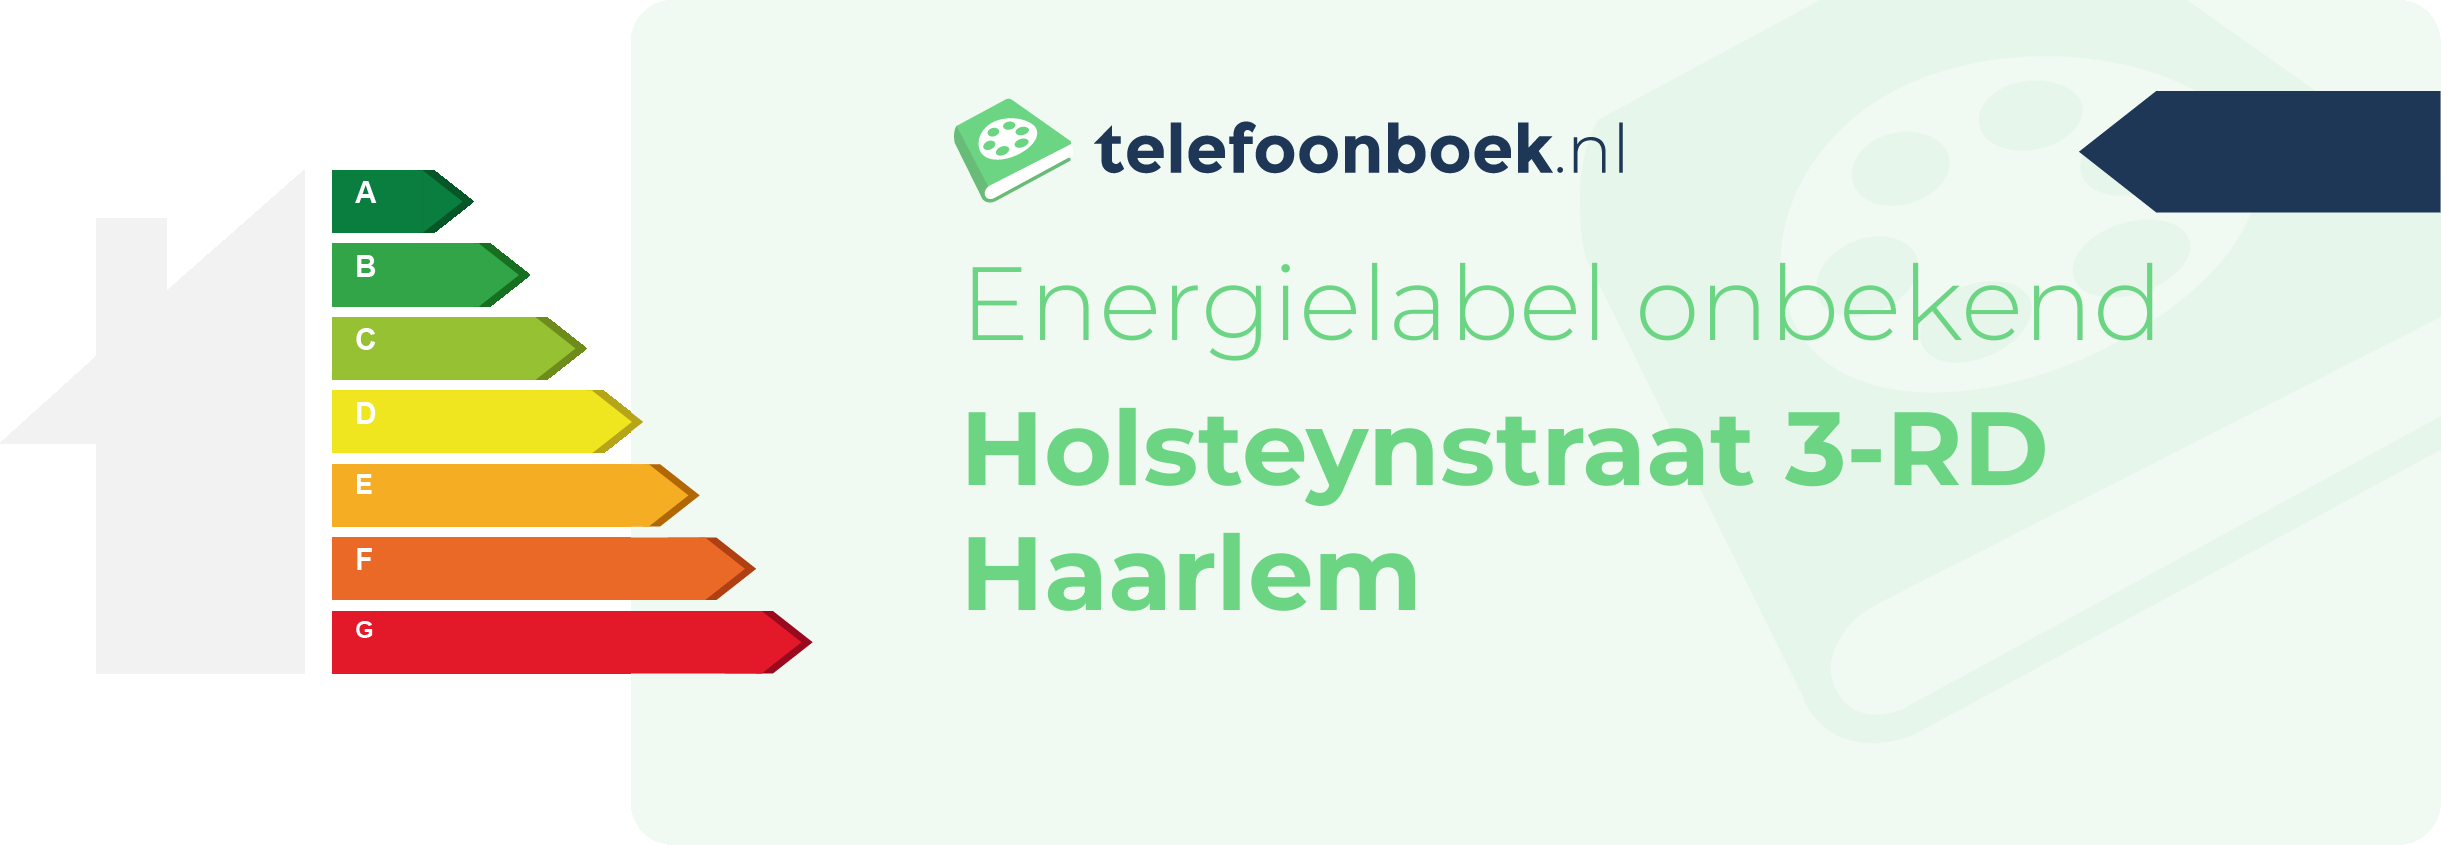 Energielabel Holsteynstraat 3-RD Haarlem